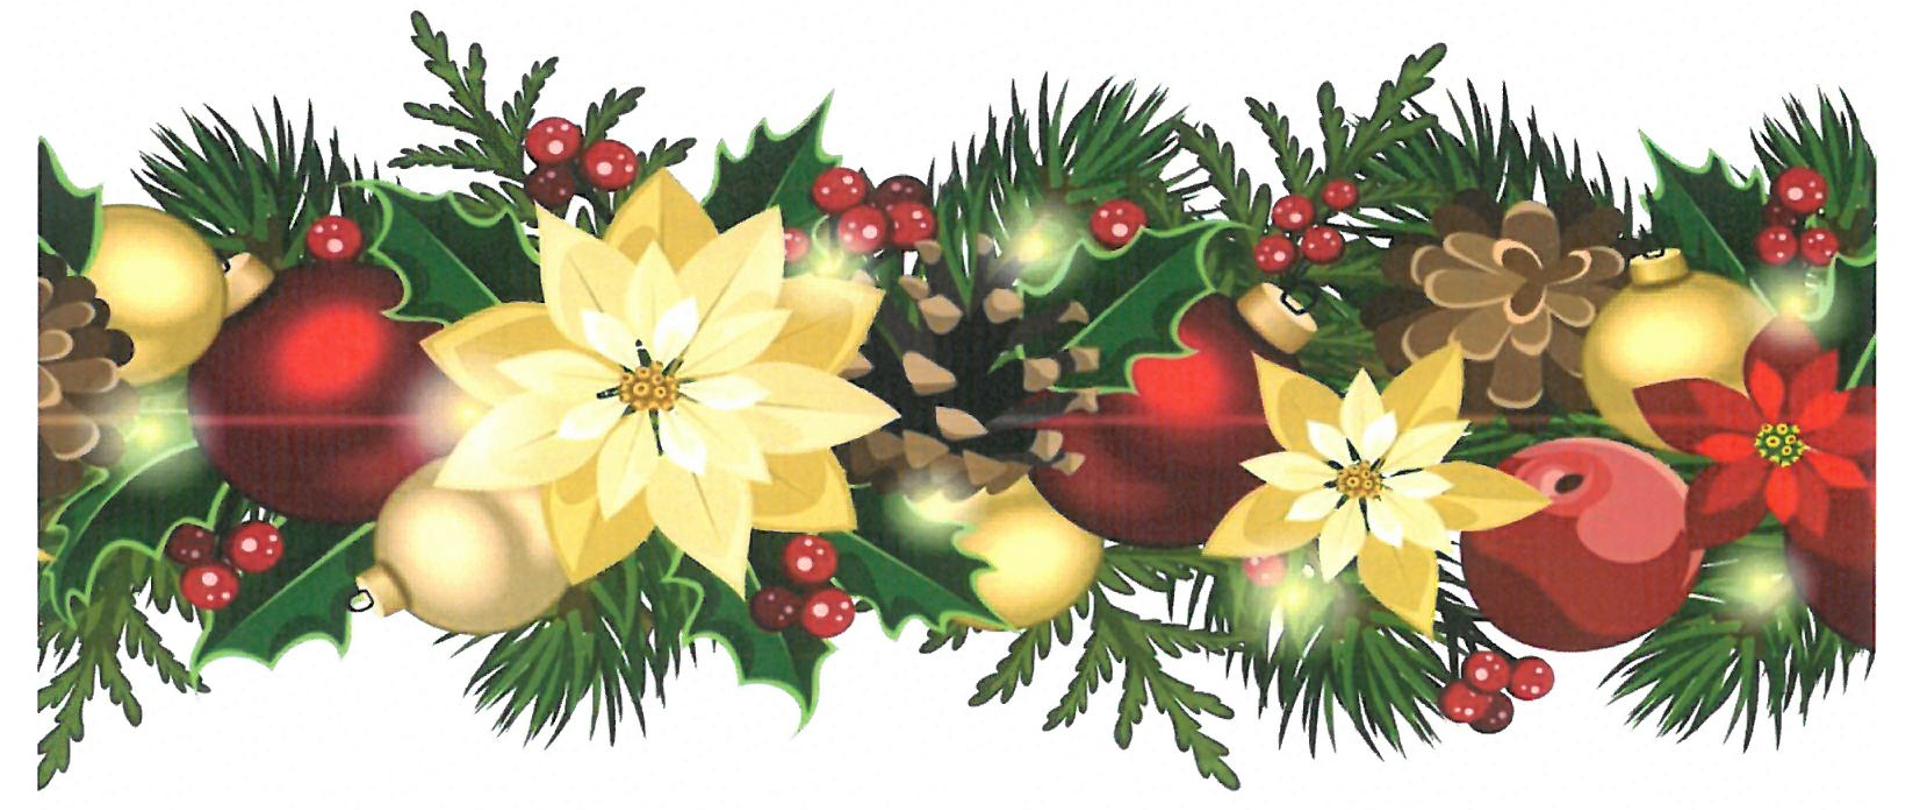 Na białym tle w górnej części po środku logo Państwowej Straży Pożarnej, poniżej napis Komenda Powiatowa Państwowej Straży Pożarnej w Policach. Niżej tekst o treści: Najradośniejszych i najpiękniejszych Świąt Bożego Narodzenia wypełnionych zapachem choinki i świątecznych wypieków, nutą wspólnie śpiewanej kolędy, ciepłem kochających serc oraz bliskością i radością życzy starszy kapitan Piotr Maciejczyk Komendant Powiatowy Państwowej Straży Pożarnej w Policach oraz funkcjonariusze i pracownicy cywilni. U dołu świąteczny akcent graficzny: gałązki z igliwiem, szyszki, żółte i czerwone bombki, żółte i czerwone kwiaty, gałązki cisu z czerwonymi owocami.